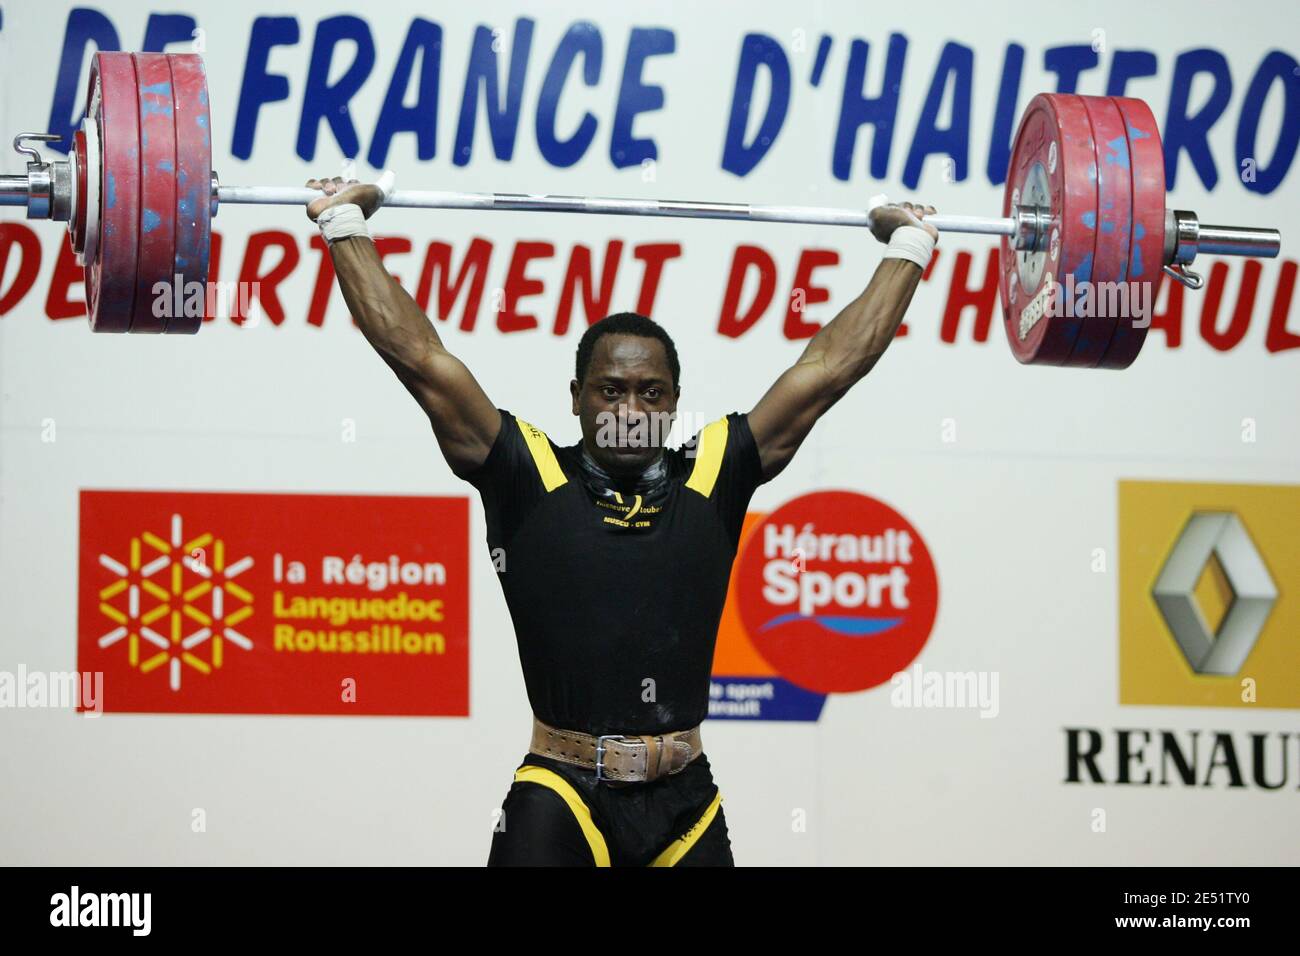 La francese Vencelas Dabaya compete nella categoria maschile di 69 kg  durante i campionati francesi di